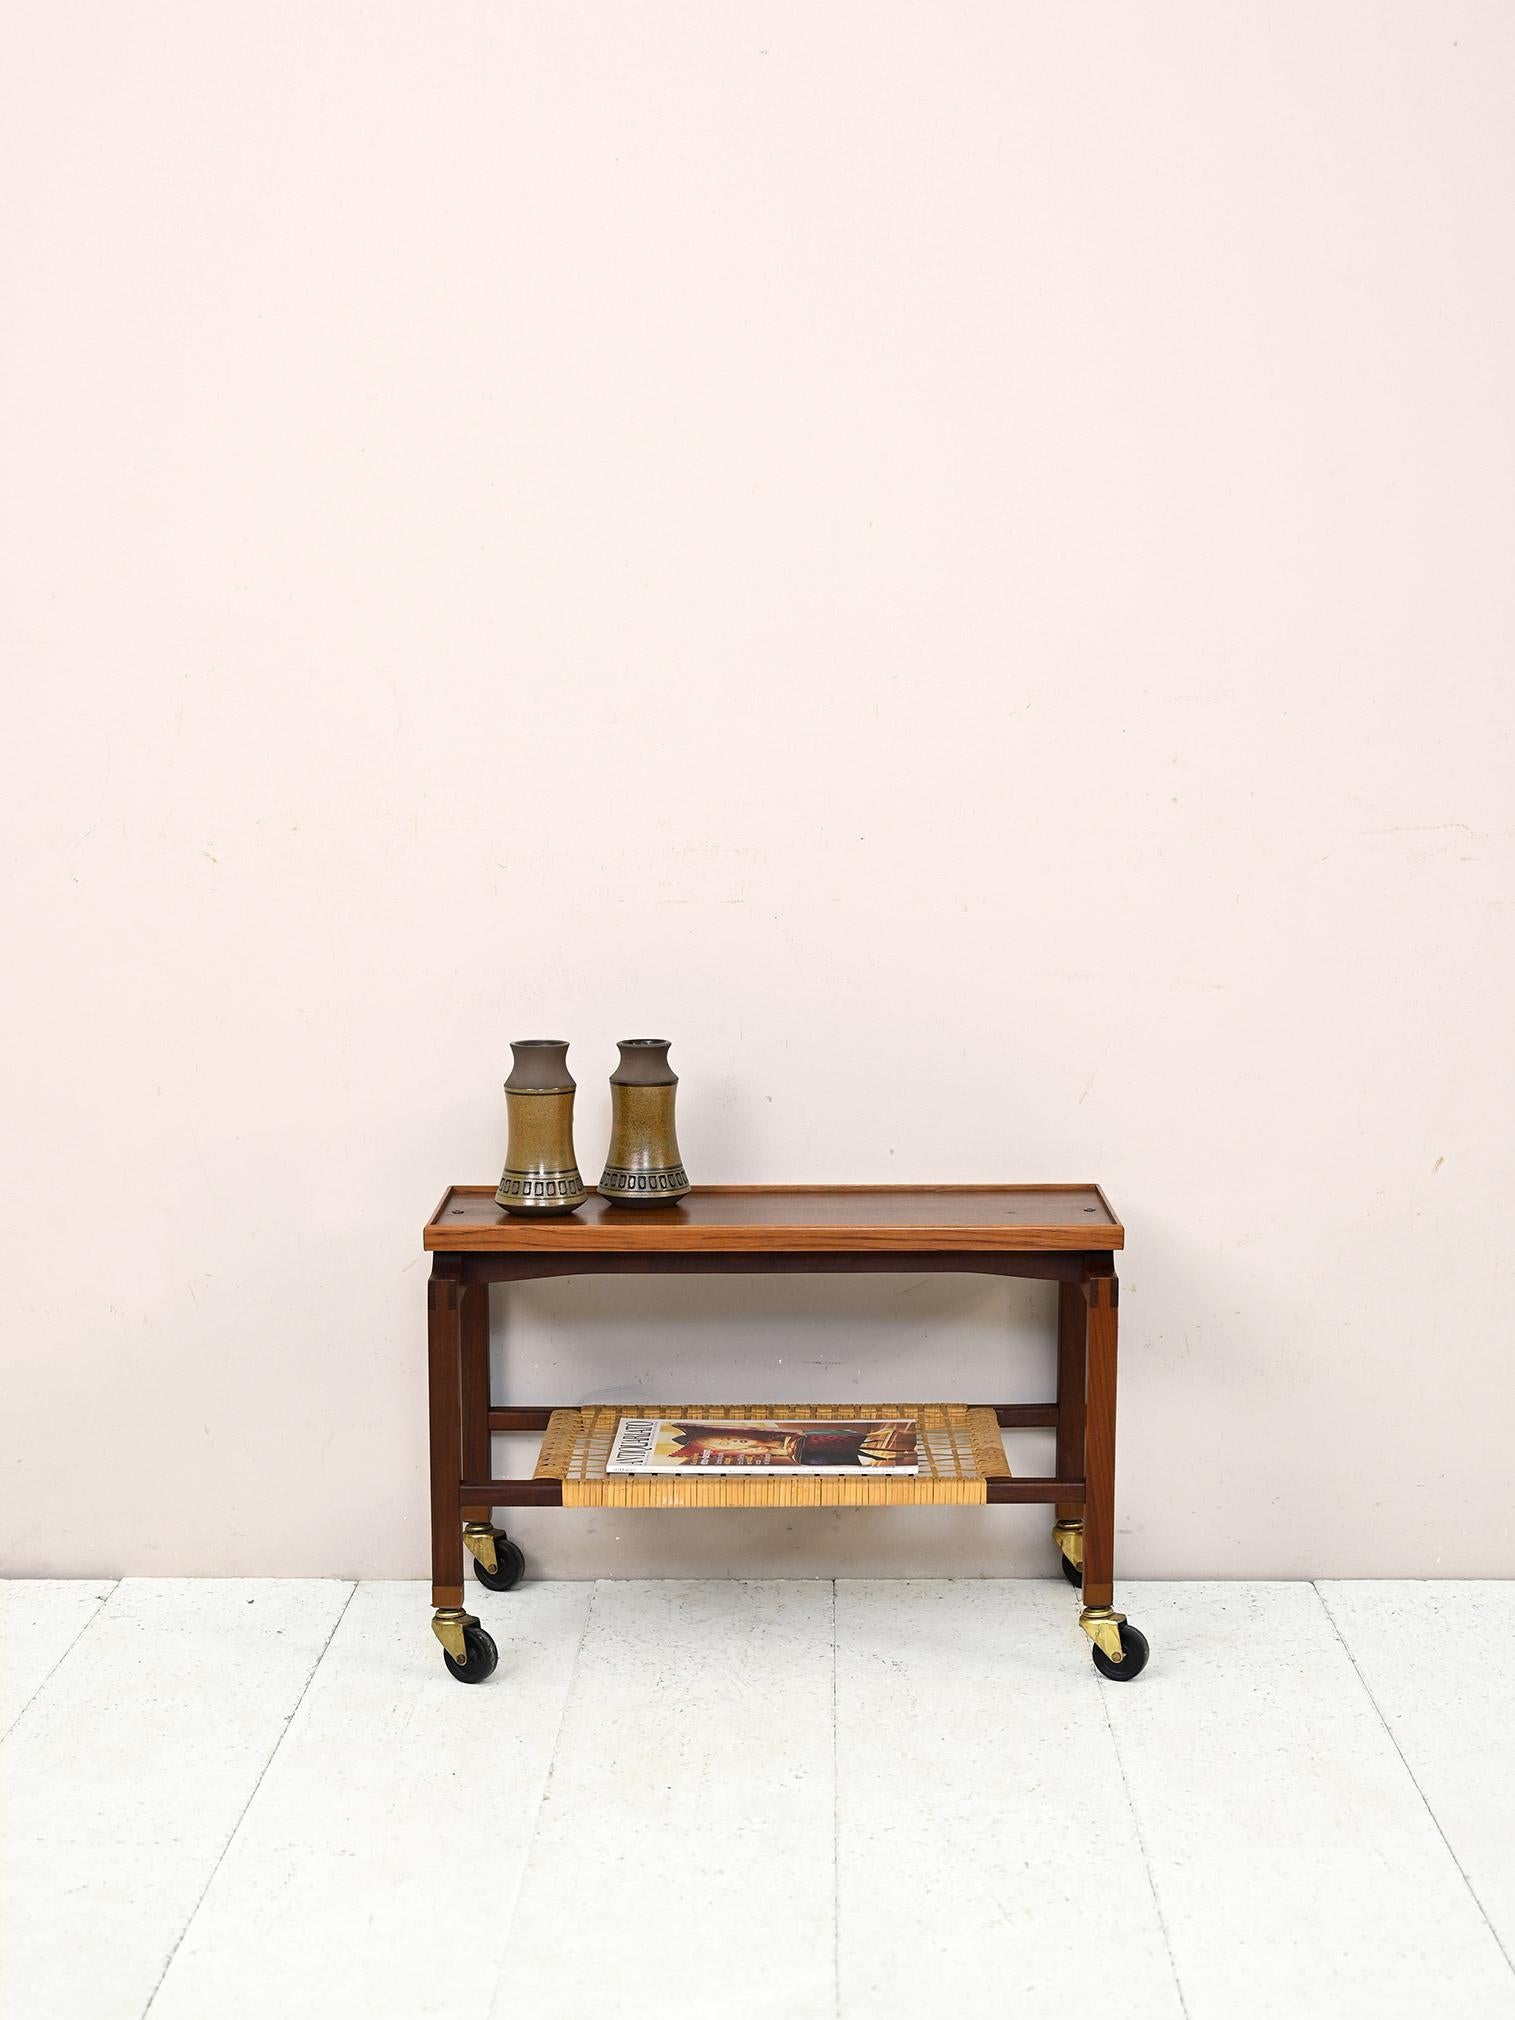 Skandinavischer Vintage Couchtisch mit Rollen.

Dieses stilvolle und funktionelle Möbelstück kann als kleiner Sofatisch oder als Mehrzweckwagen verwendet werden und verfügt über eine Ablage aus geflochtenem Rattan.

Guter Zustand. Es wurde eine